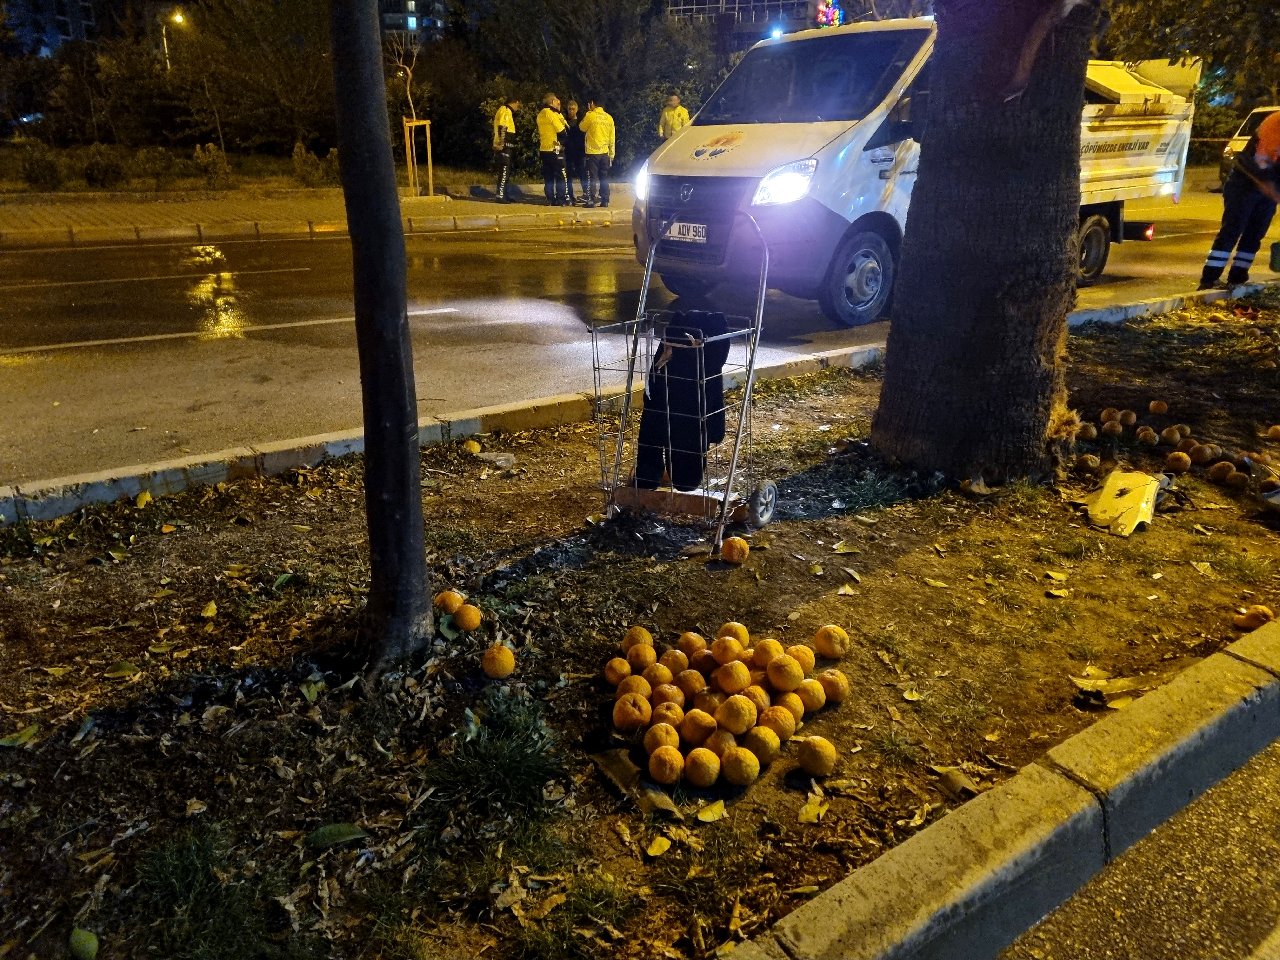 Reçel yapmak için turunç toplayan 3 kadın, otomobil çarpması sonucu hayatını kaybetti